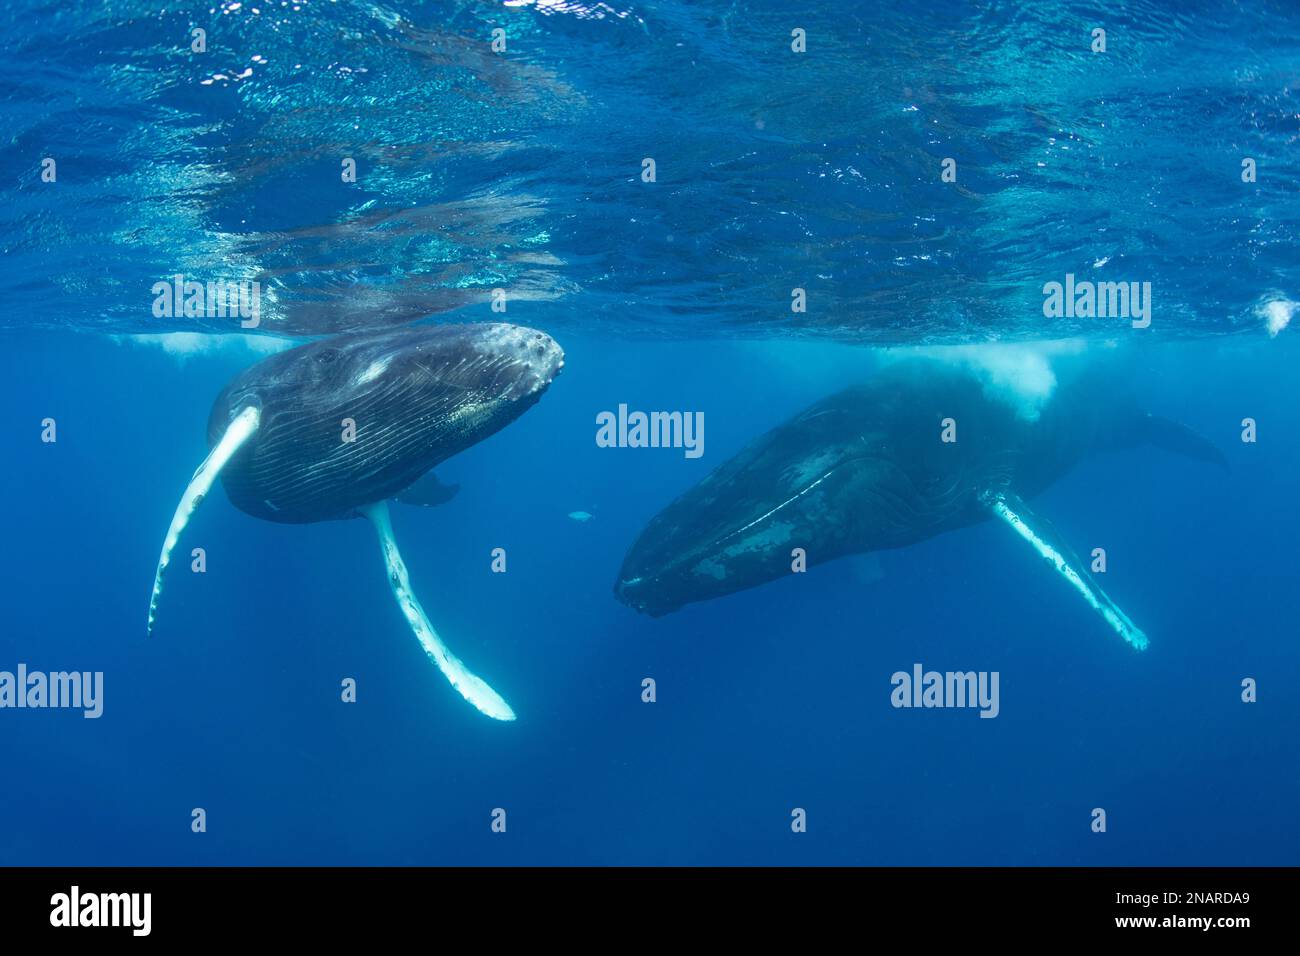 La ballena jorobada (Megaptera novaeangliae) puede alcanzar longitudes de 12-16 metros. En el Atlántico, las hembras dan a luz en el cálido mar Caribe. Foto de stock